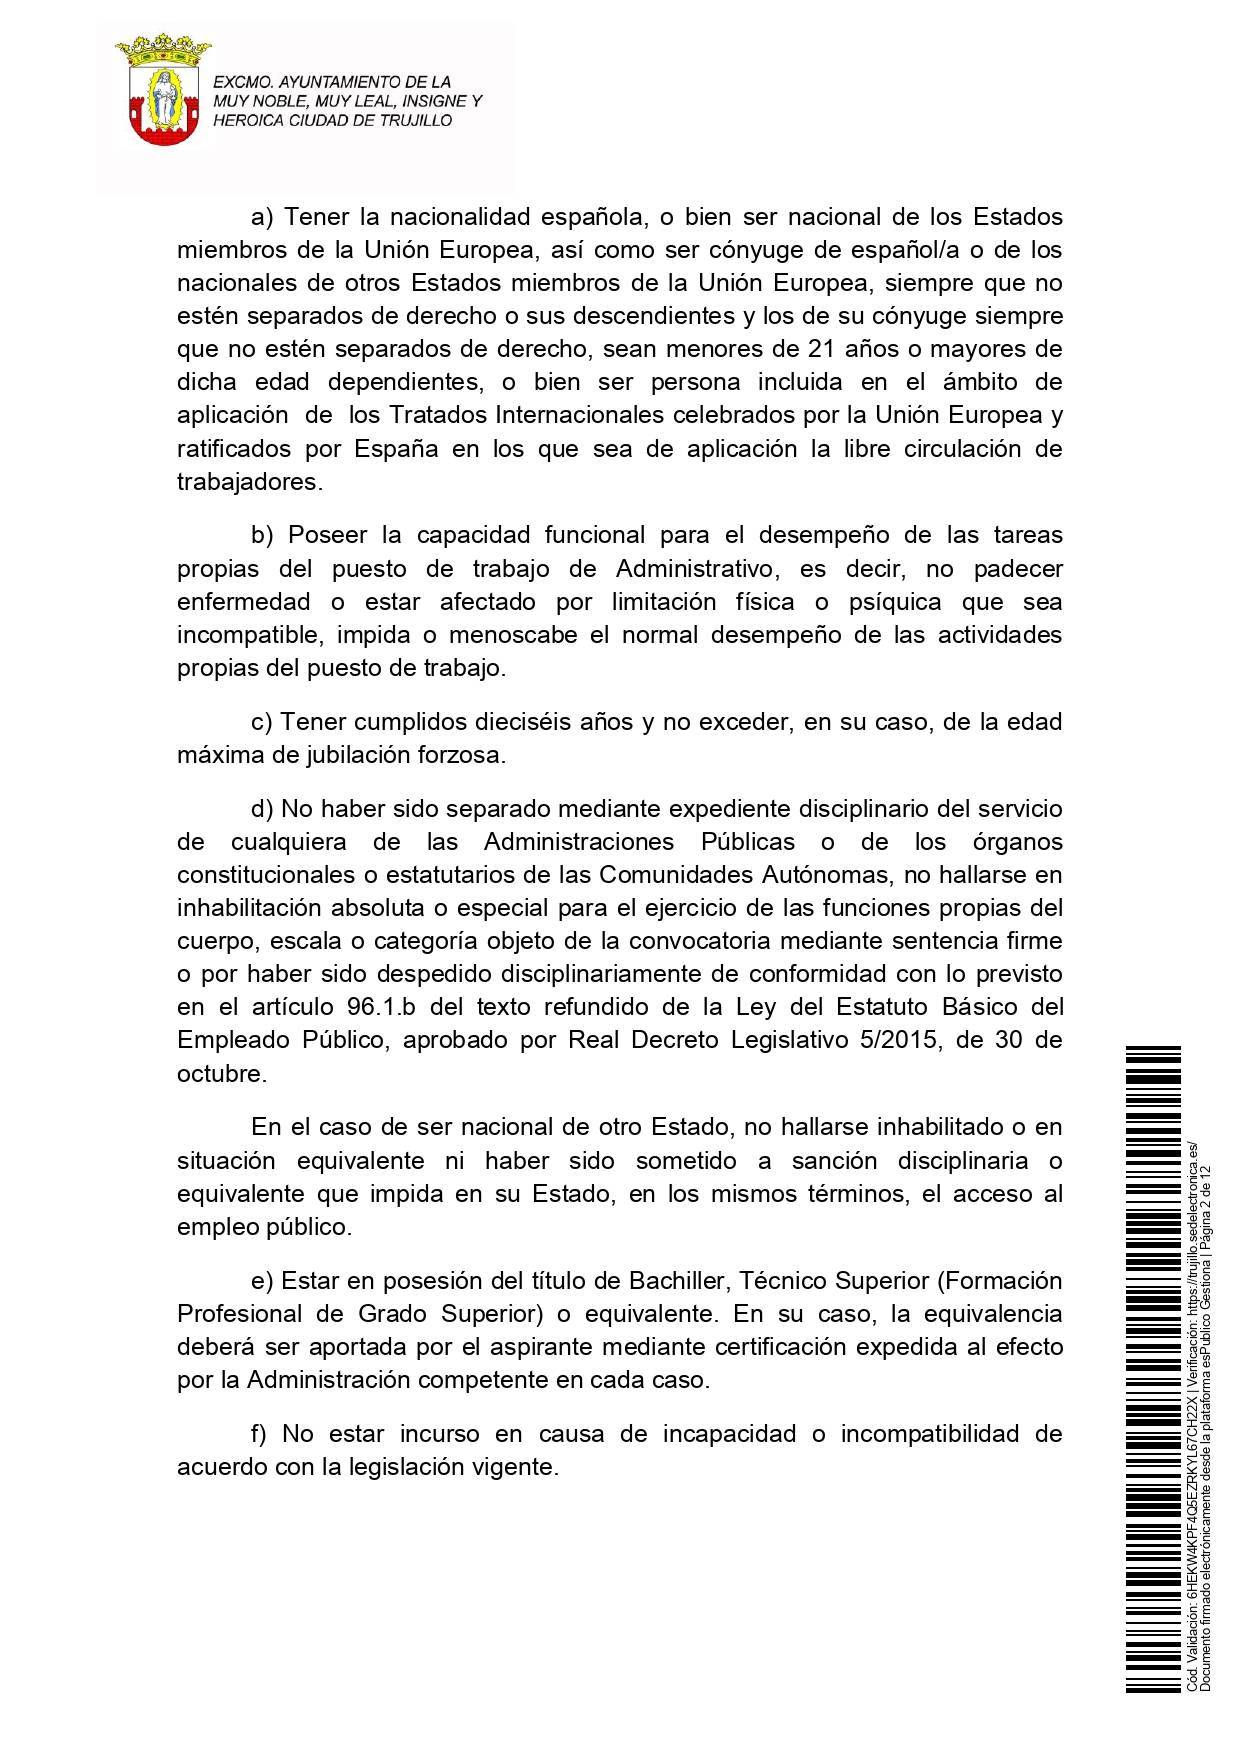 2 administrativos (2021) - Trujillo (Cáceres) 2